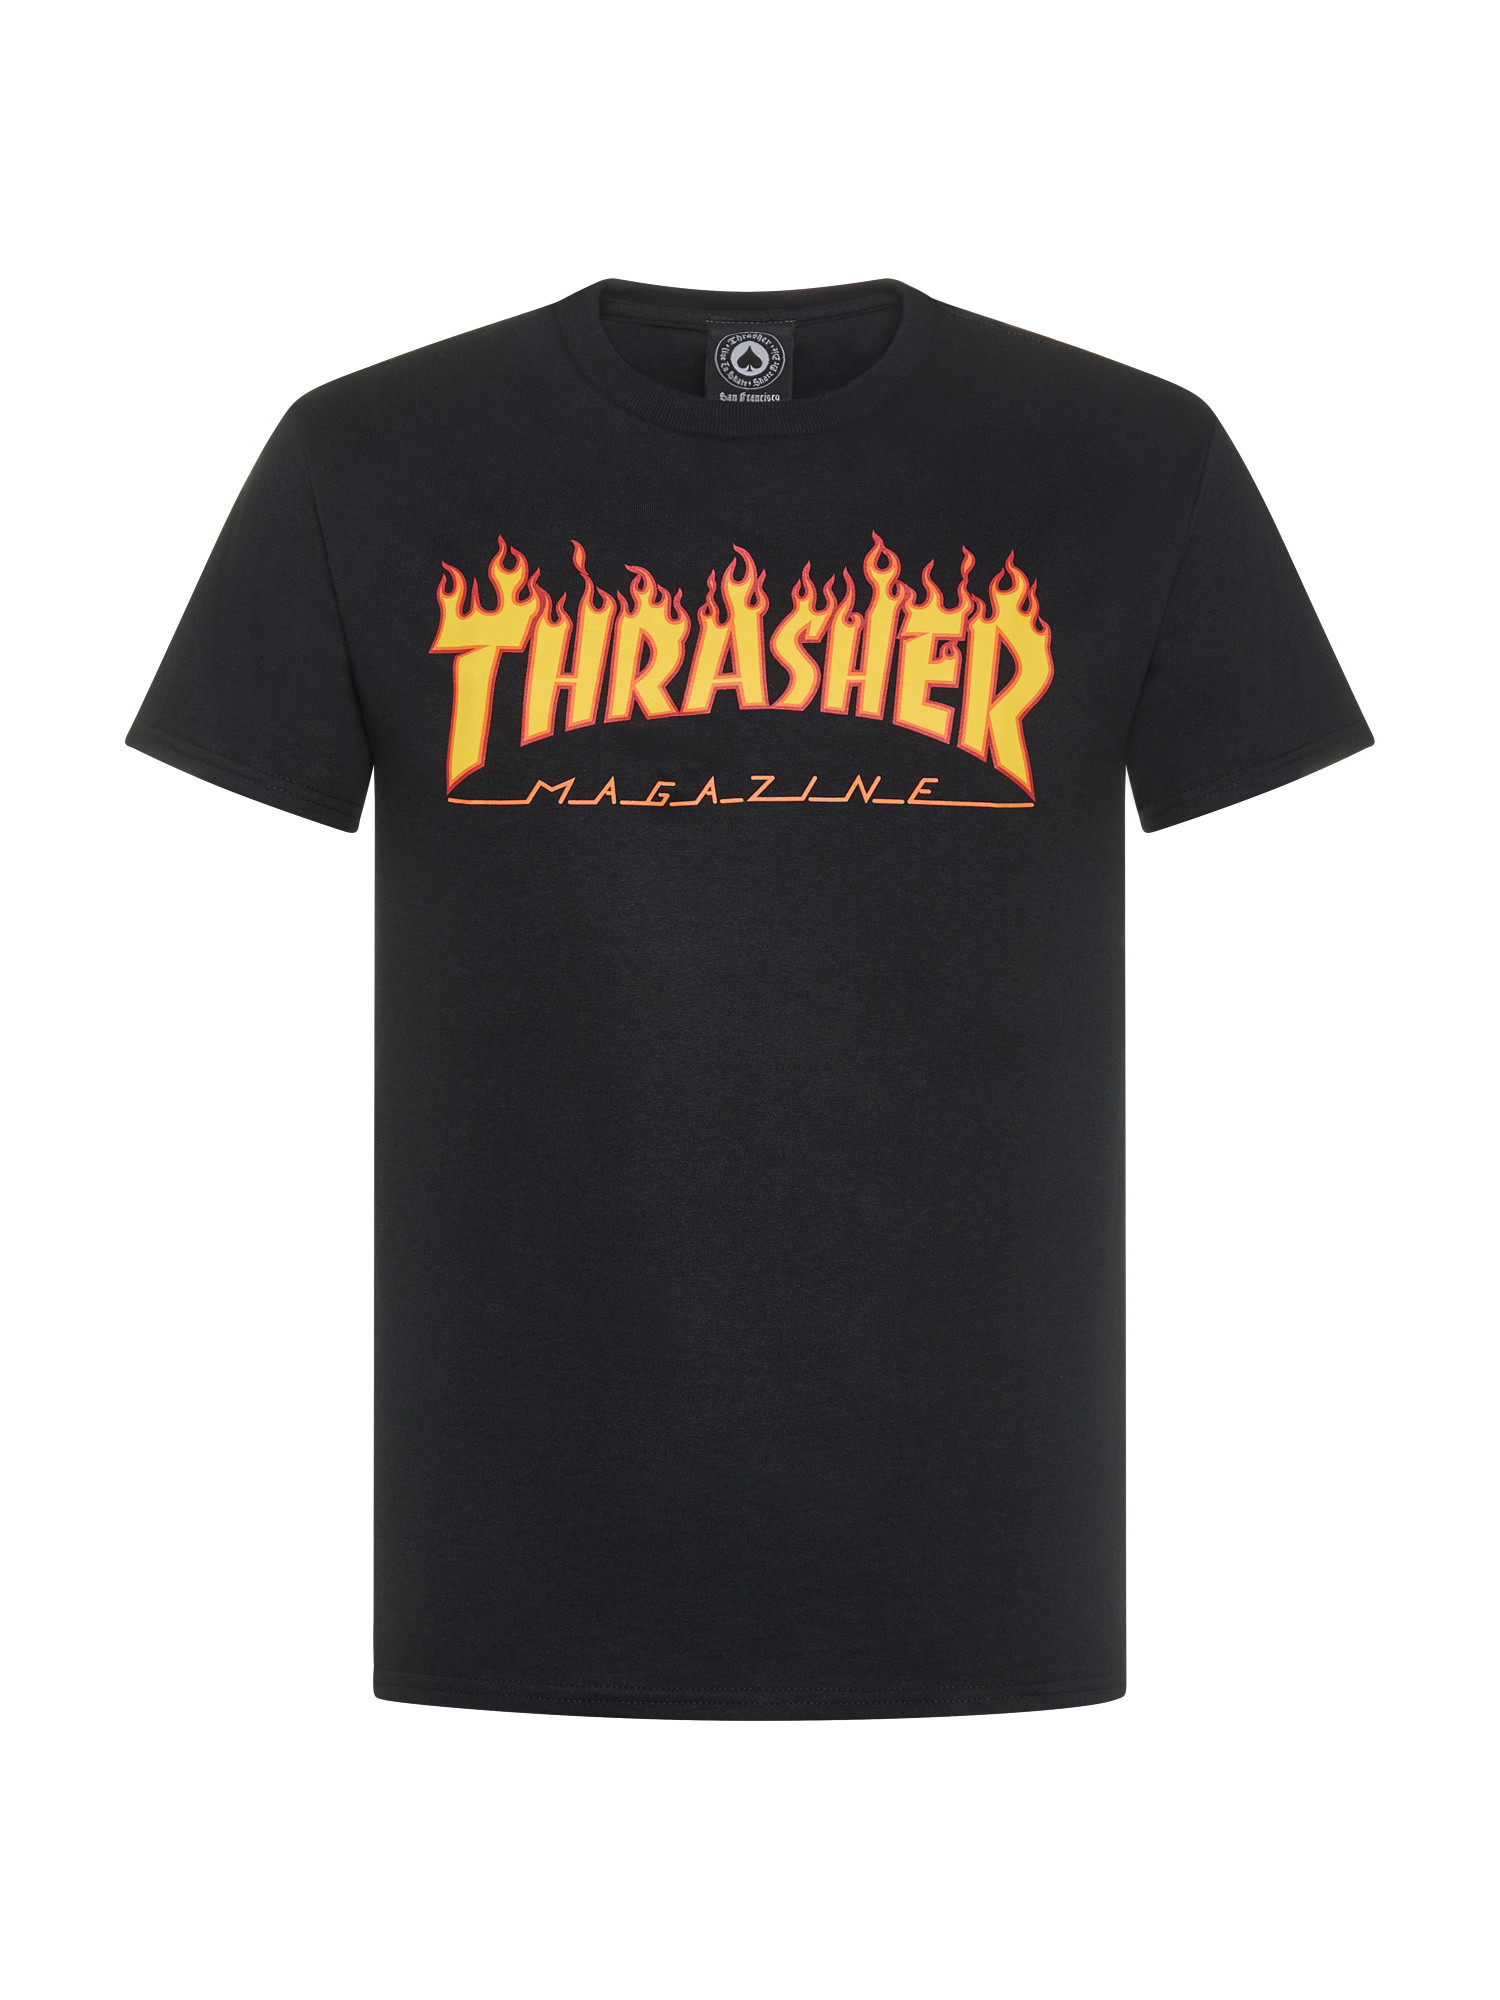 Thrasher - T-Shirt logo fiamme, Nero, large image number 0